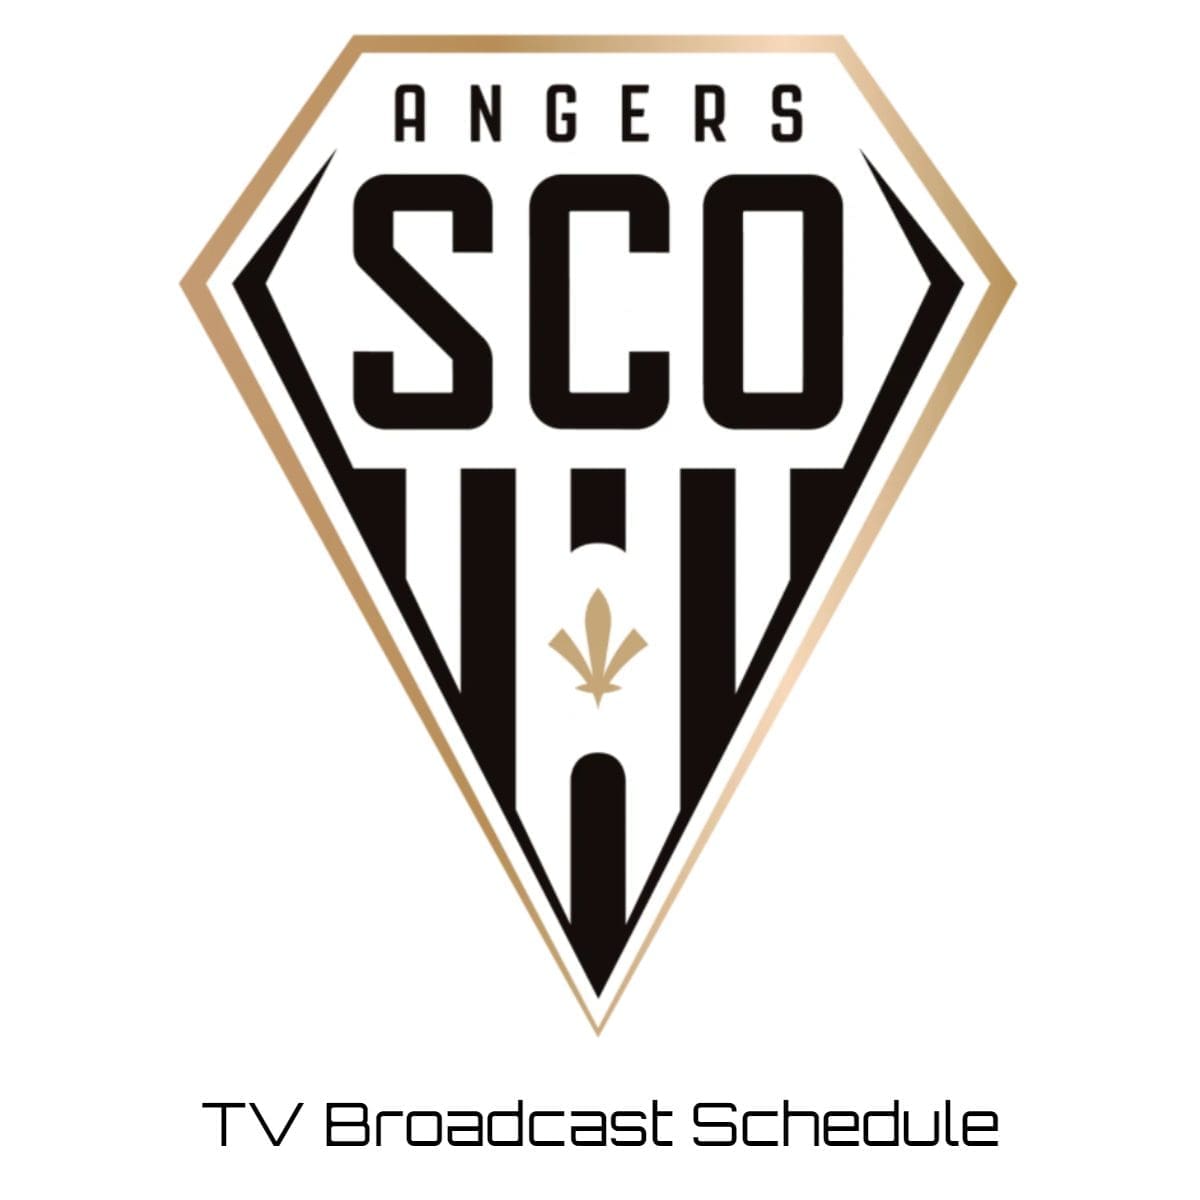 Angers TV Broadcast Schedule